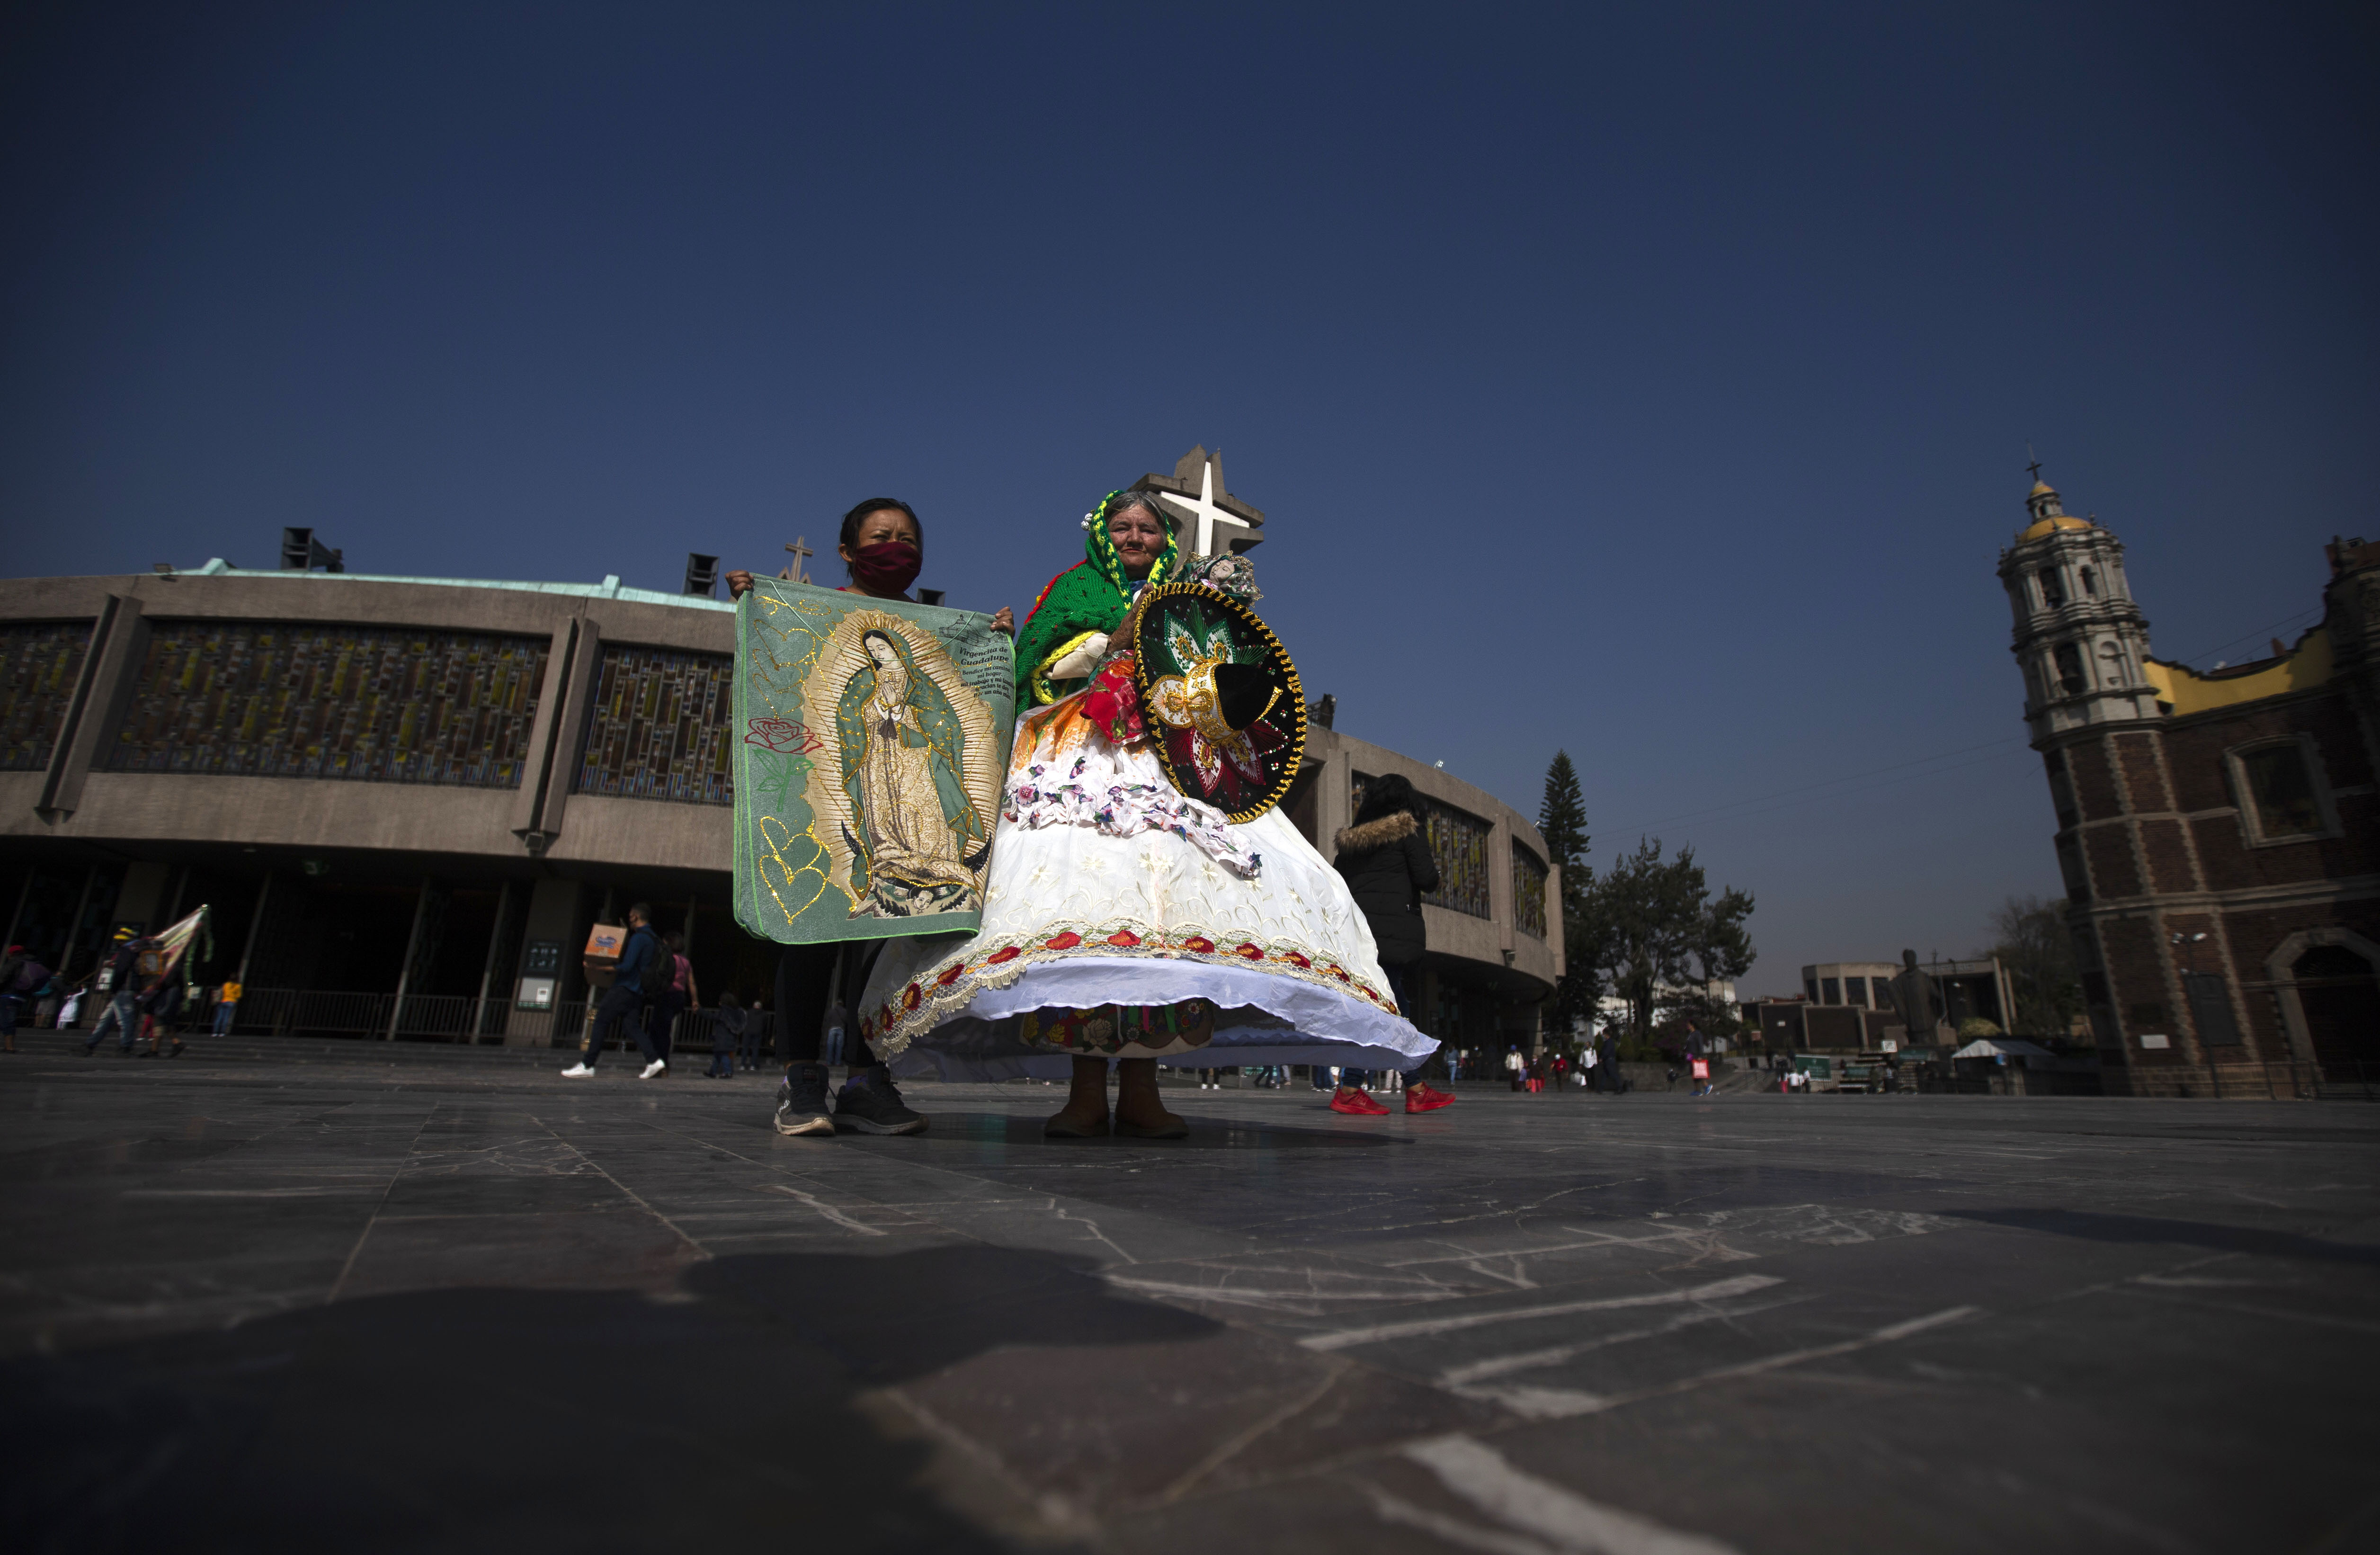 Peregrinos caminan en la plaza frente a la Basílica de la Virgen de Guadalupe en la Ciudad de México, el miércoles 9 de diciembre de 2020.